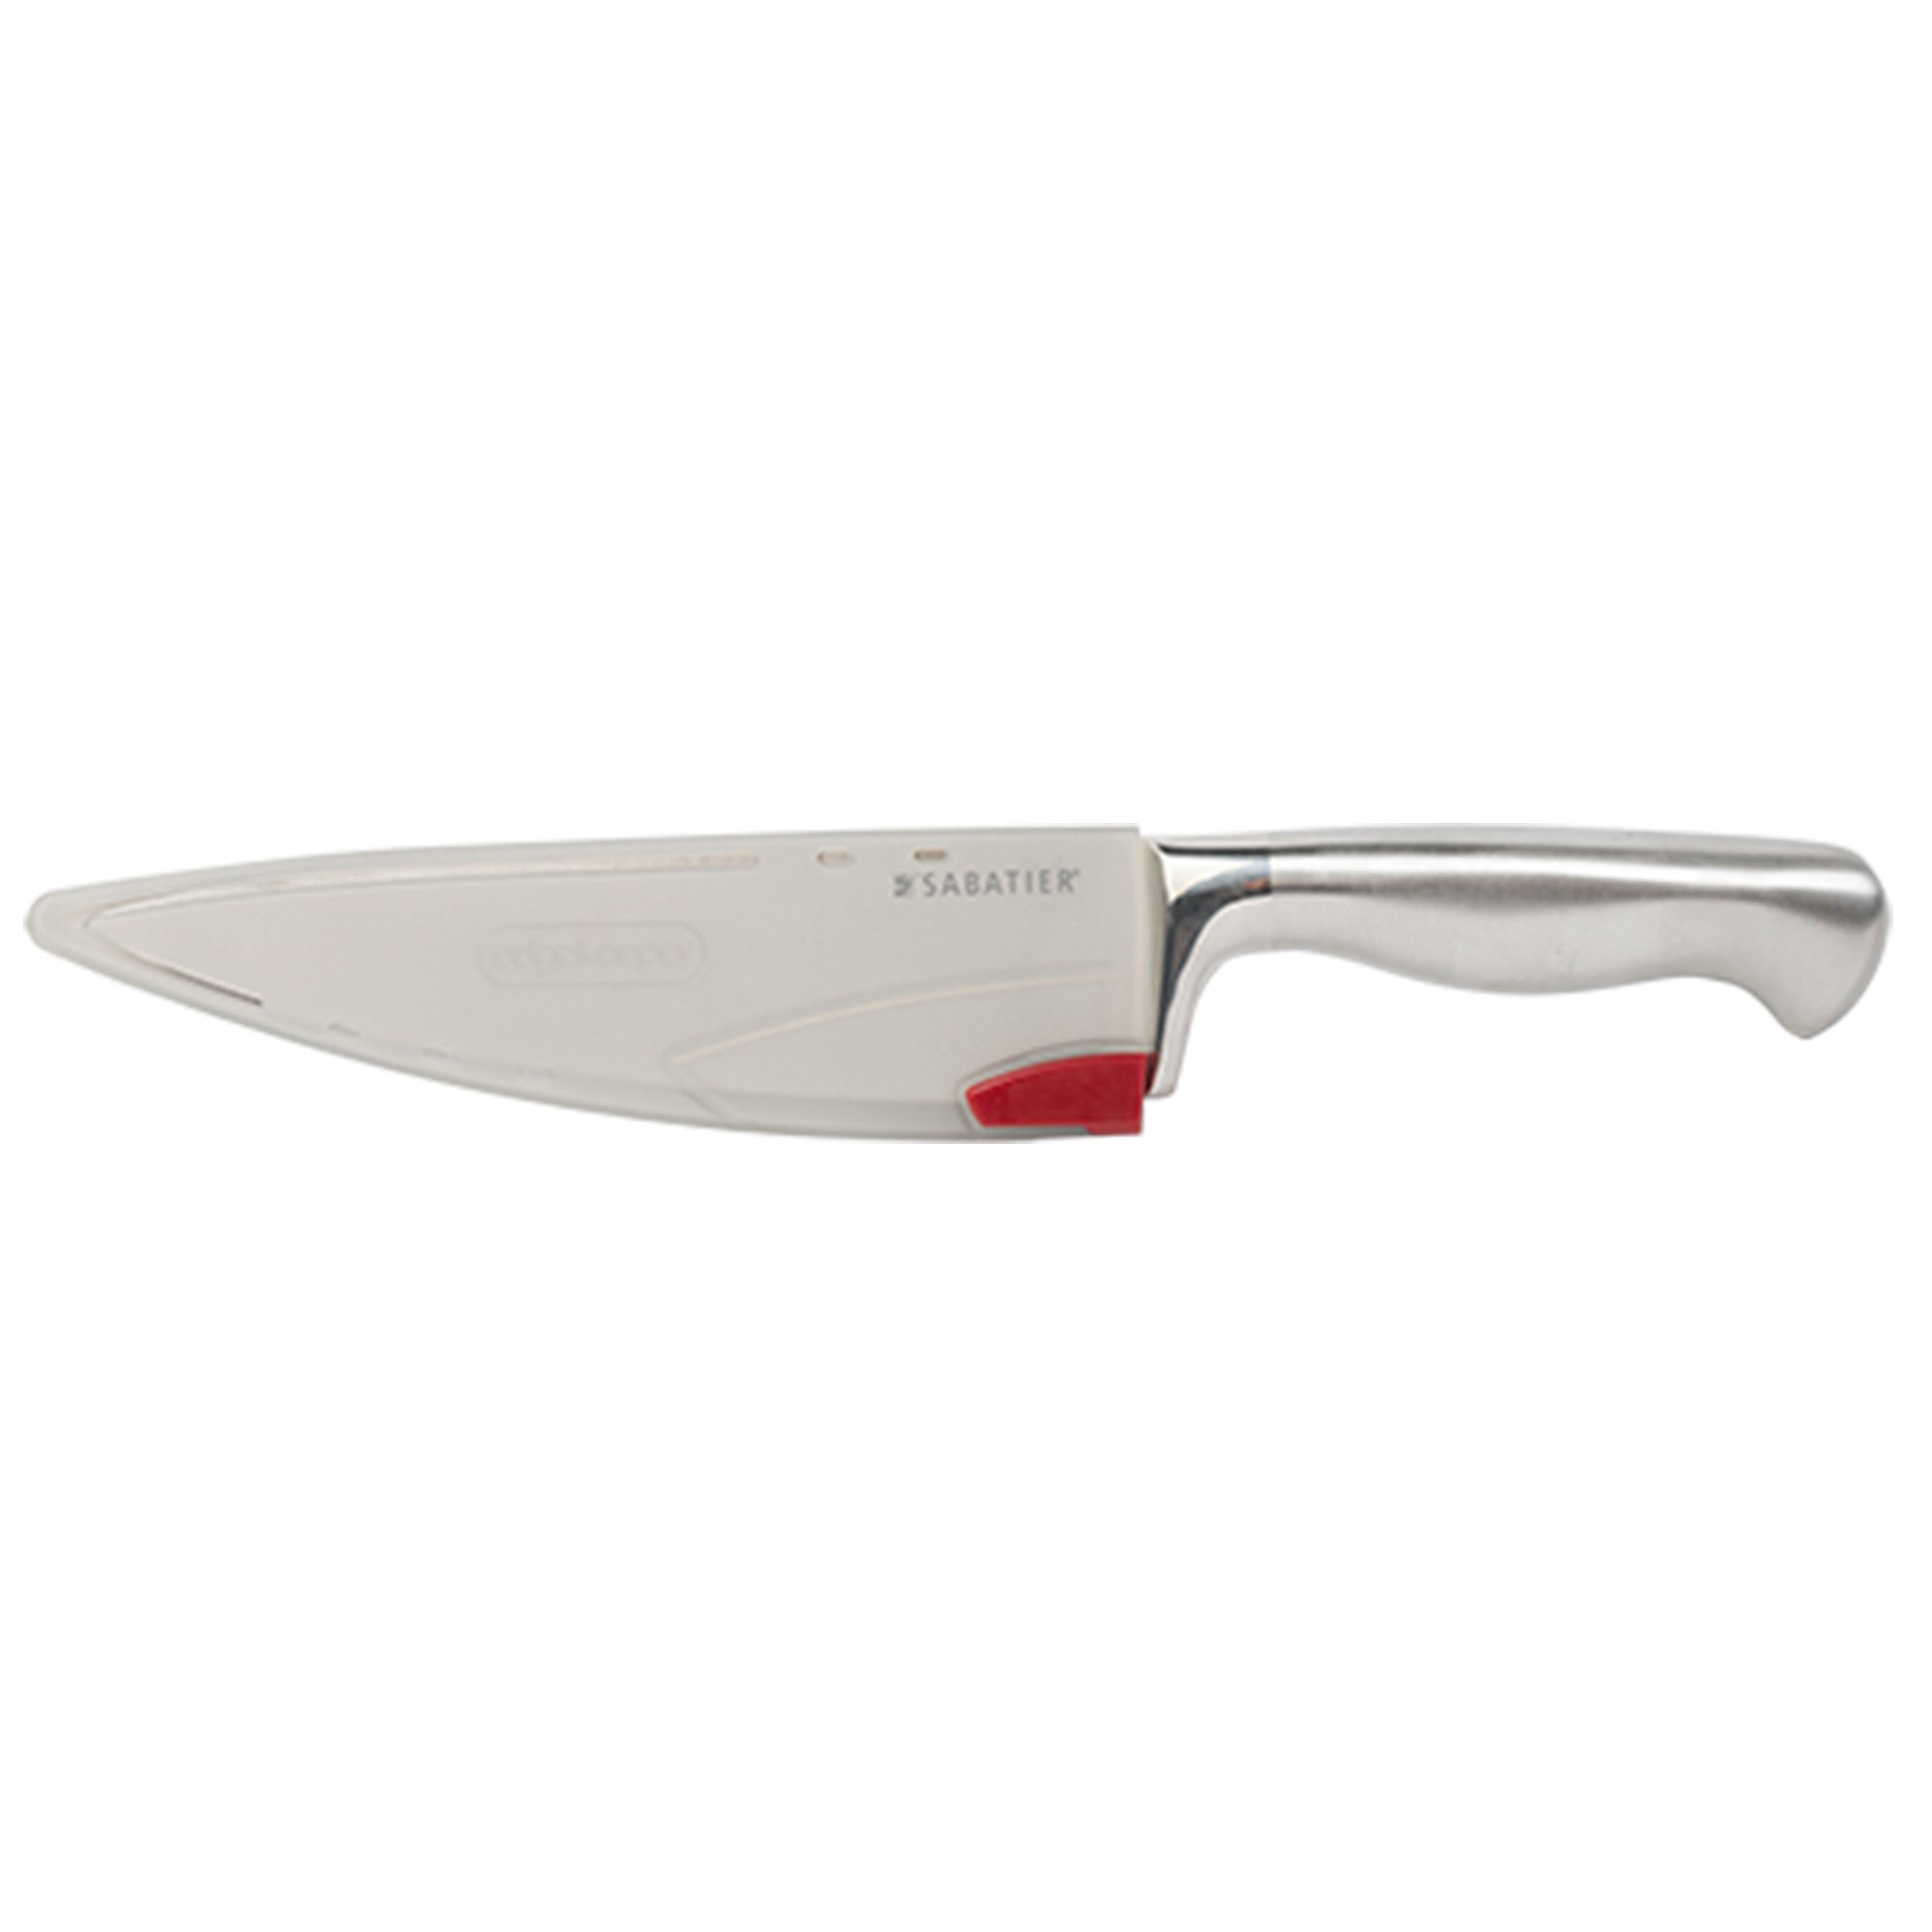 Sabatier 20cm Chef's Knife